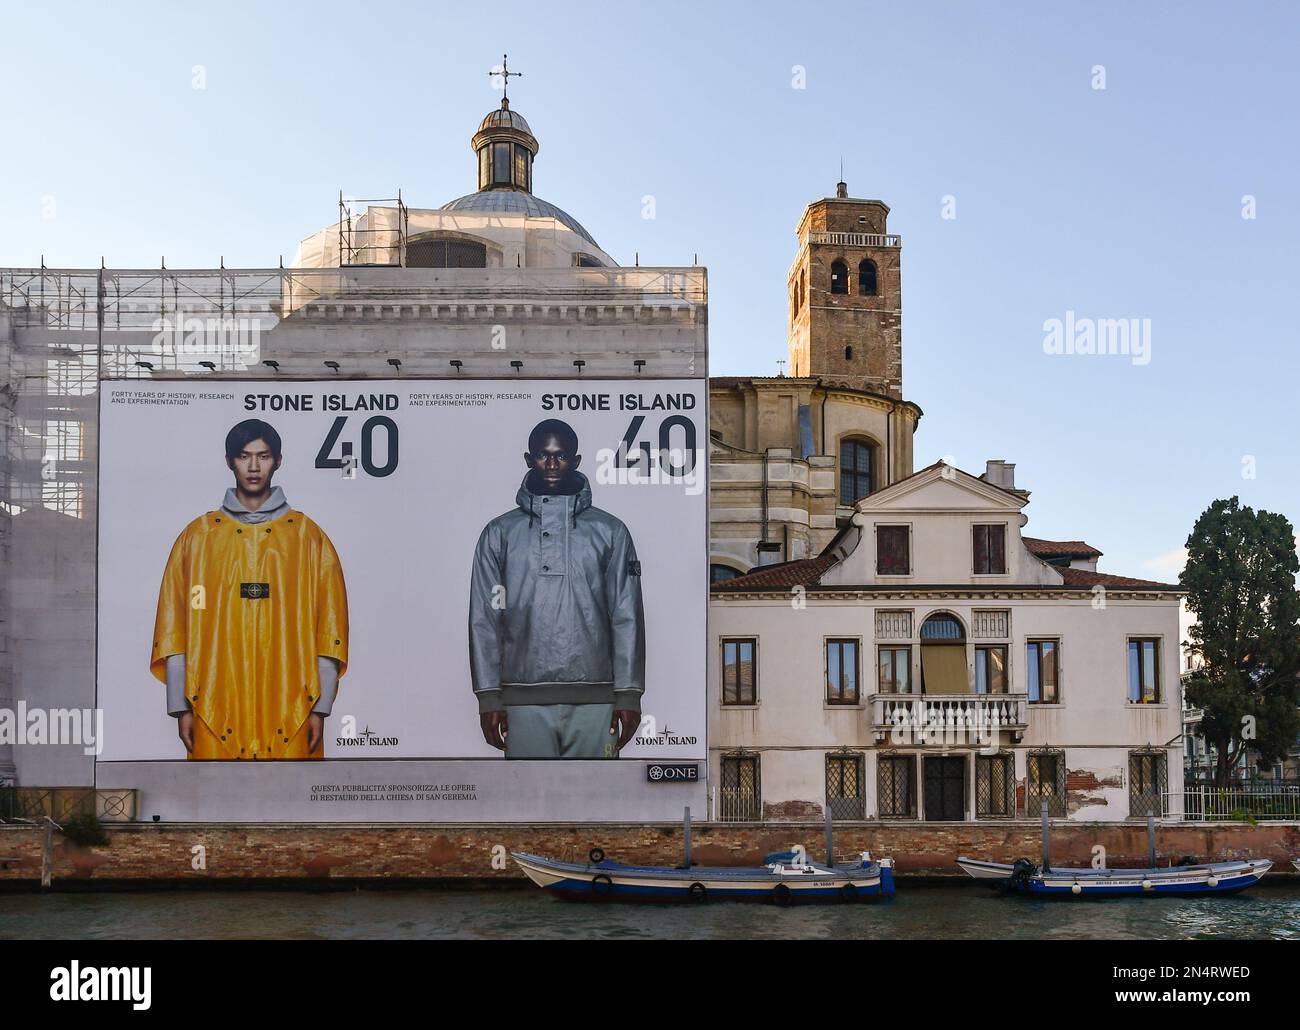 La Chiesa di San Geremia con la facciata in restauro coperta da un grande banner pubblicitario che ha causato molte polemiche, Venezia, Italia Foto Stock